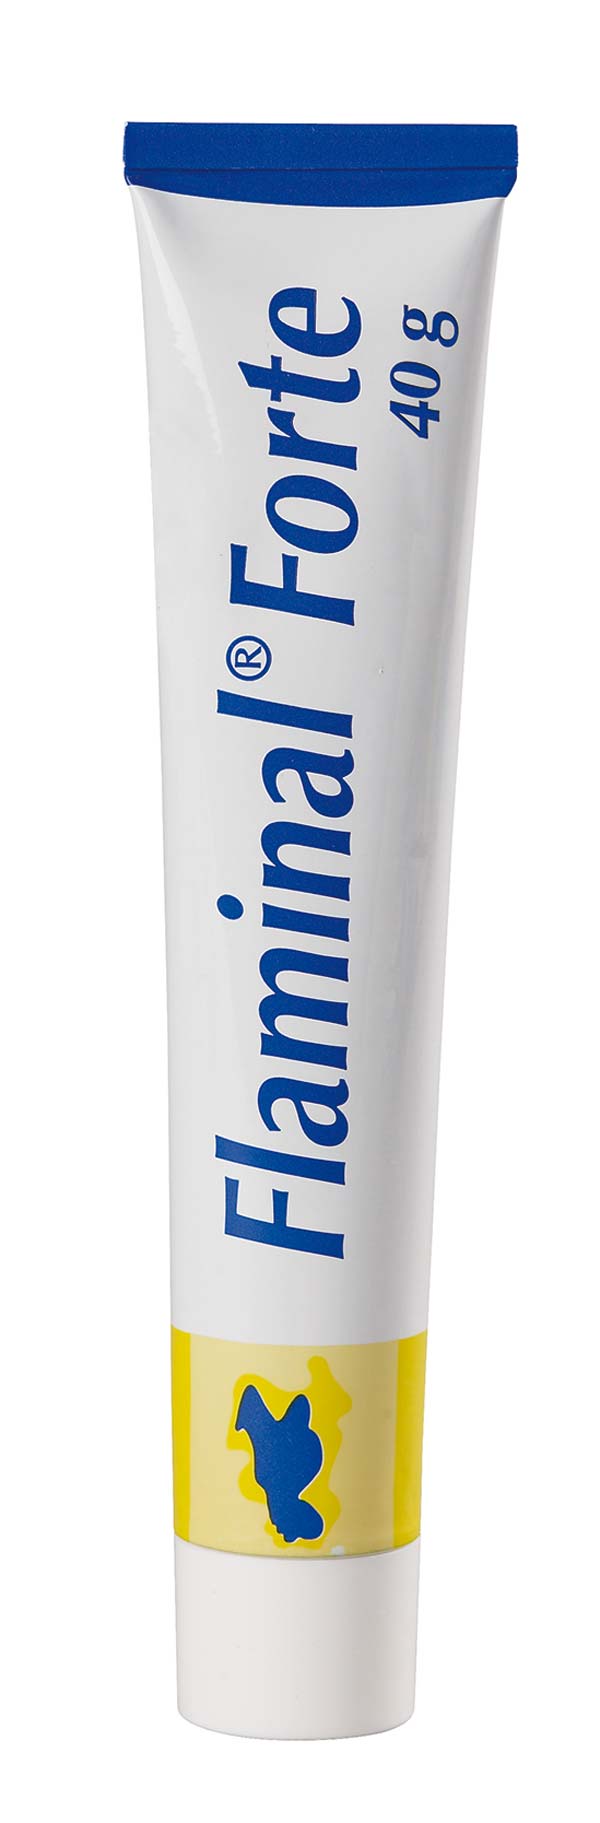 FLAMINAL Forte Enzym Alginogel - 40g Tube